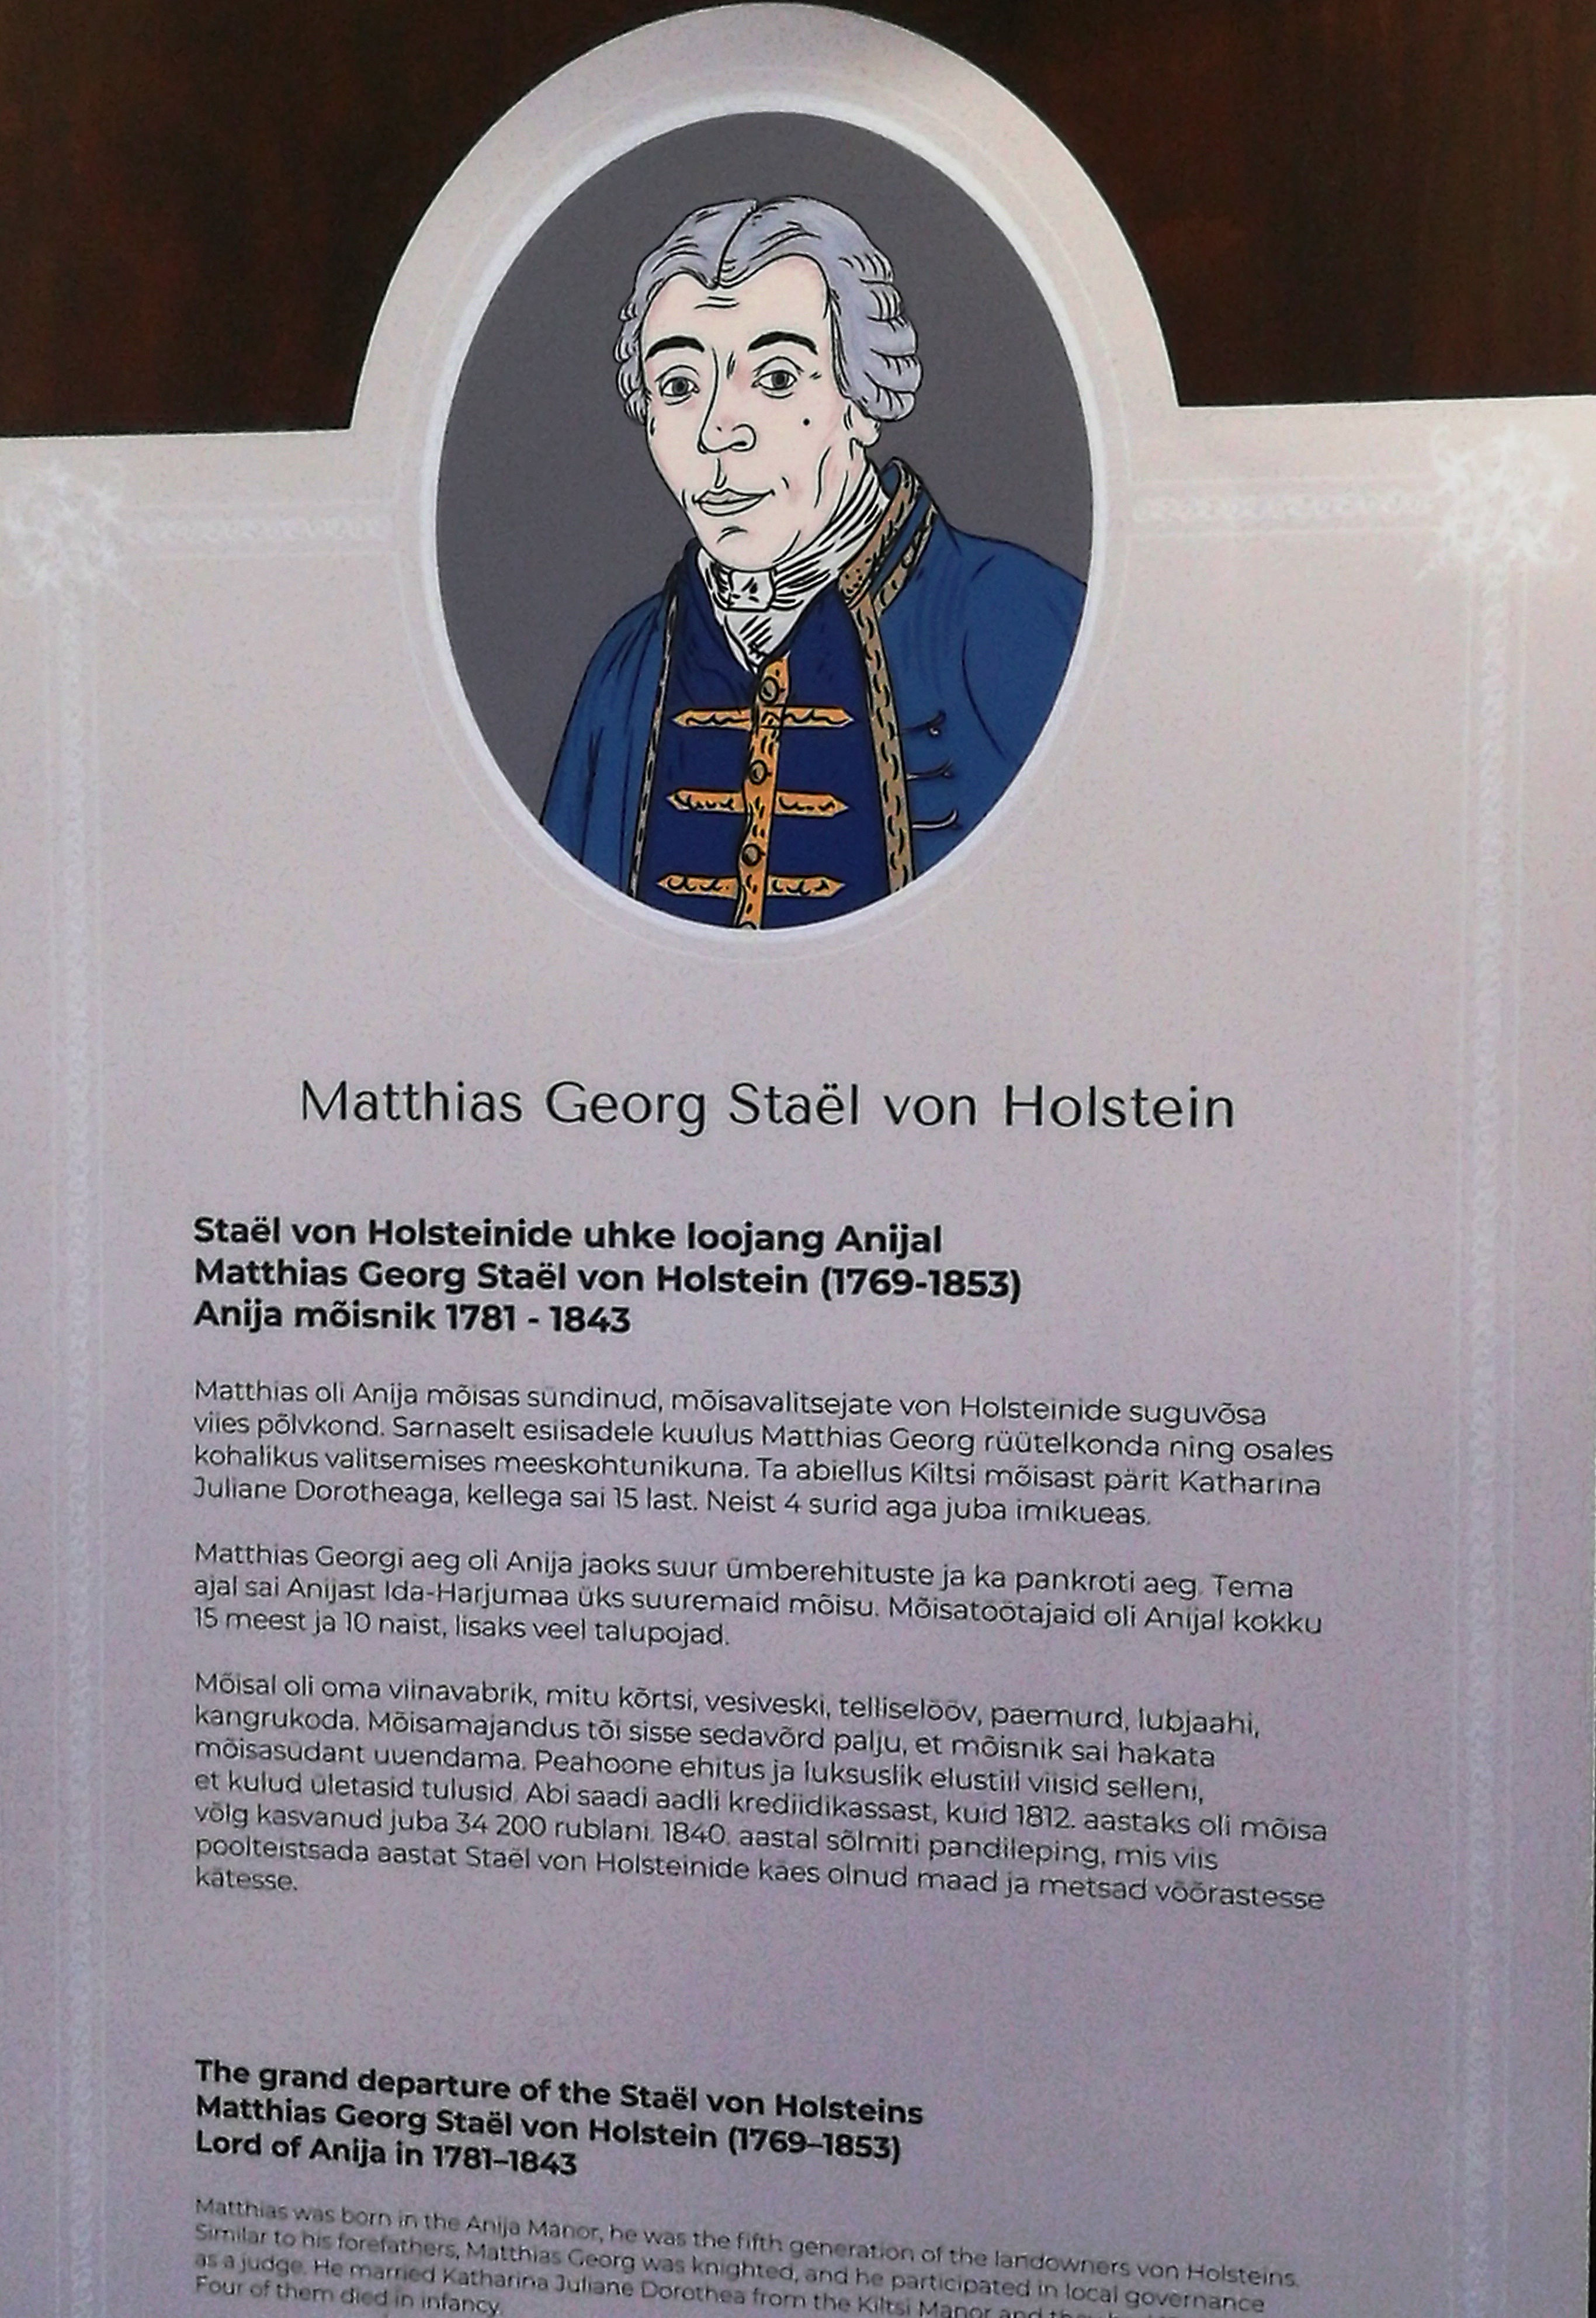 Георг фон Хольстен - один из столпов династии Хольстенов